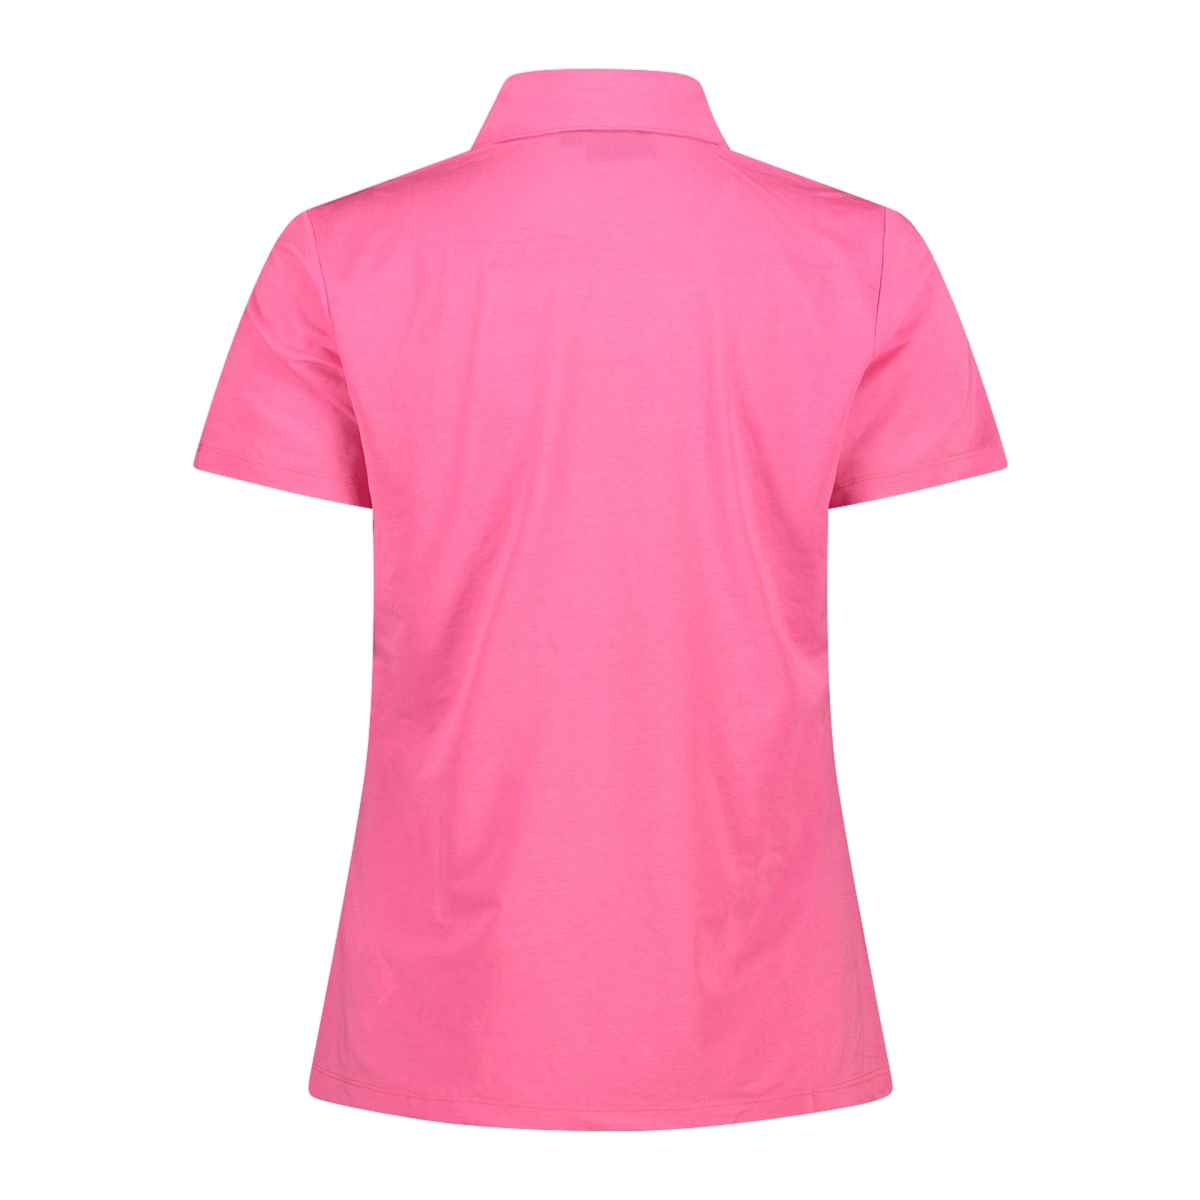 CMP Damen Polohemd Shirt Woman Polo 33N5586 pink fluo